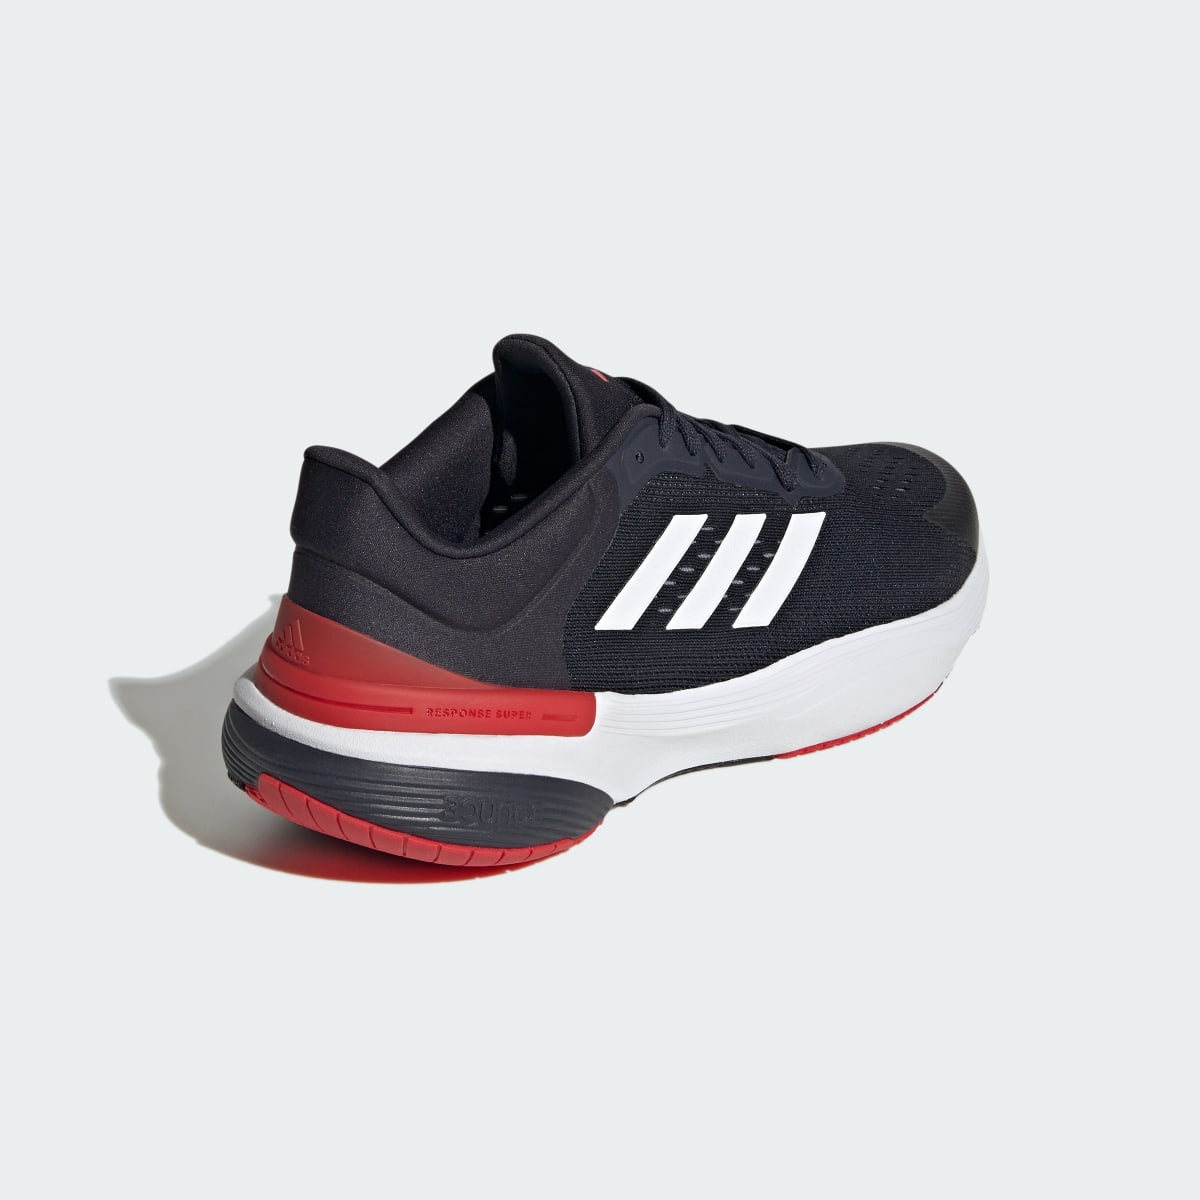 Adidas Response Super 2.0 Ayakkabı. 6